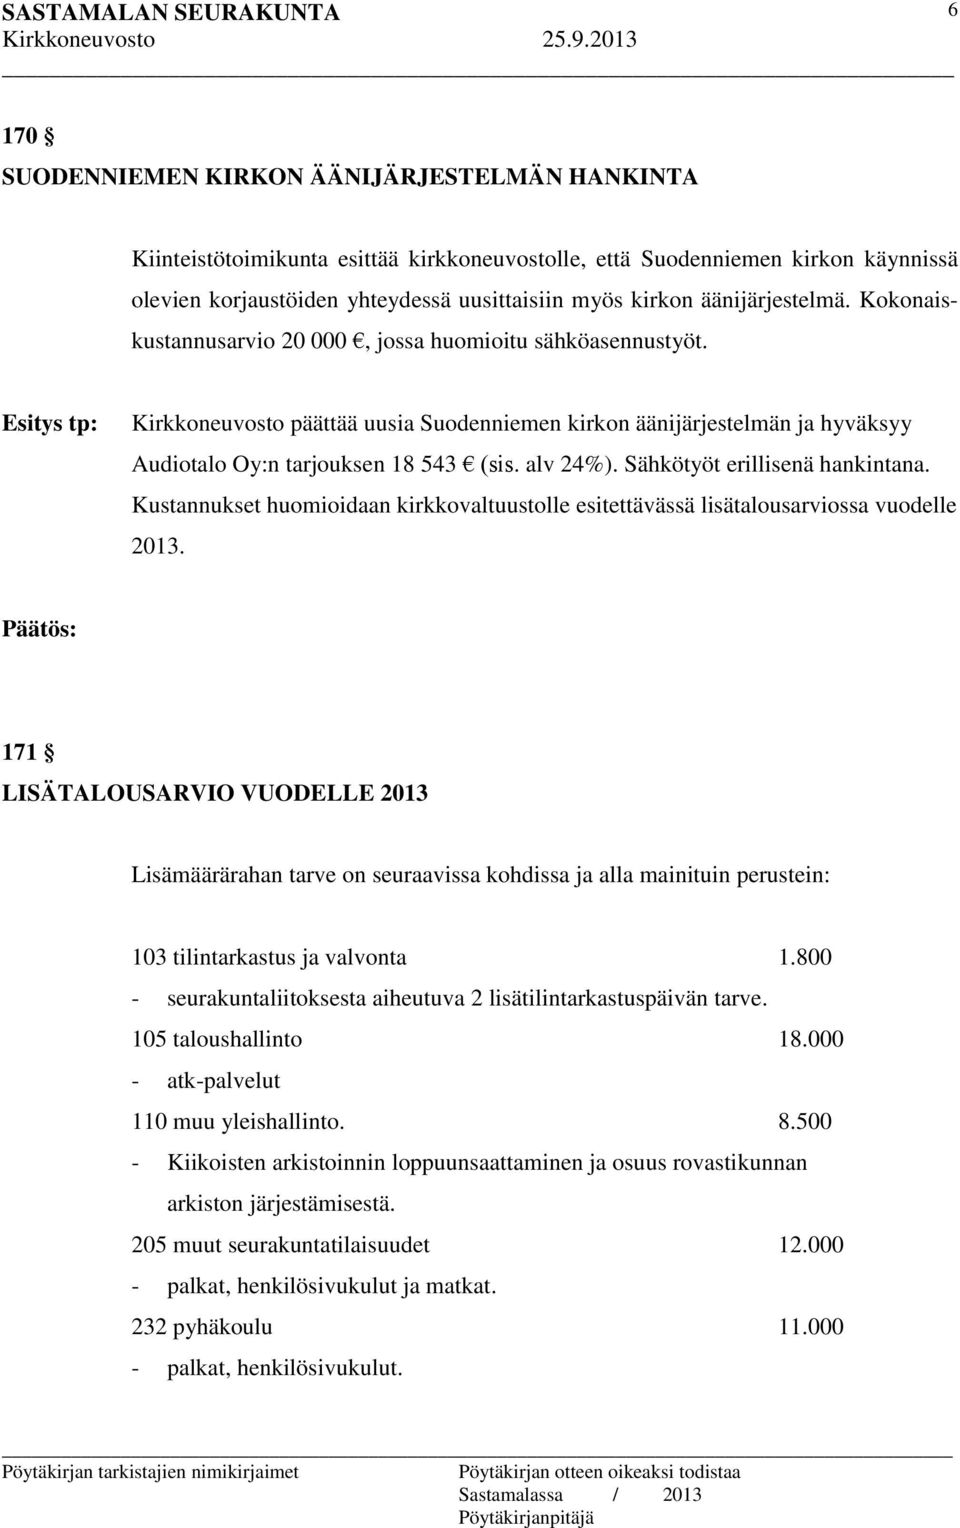 Esitys tp: Kirkkoneuvosto päättää uusia Suodenniemen kirkon äänijärjestelmän ja hyväksyy Audiotalo Oy:n tarjouksen 18 543 (sis. alv 24%). Sähkötyöt erillisenä hankintana.